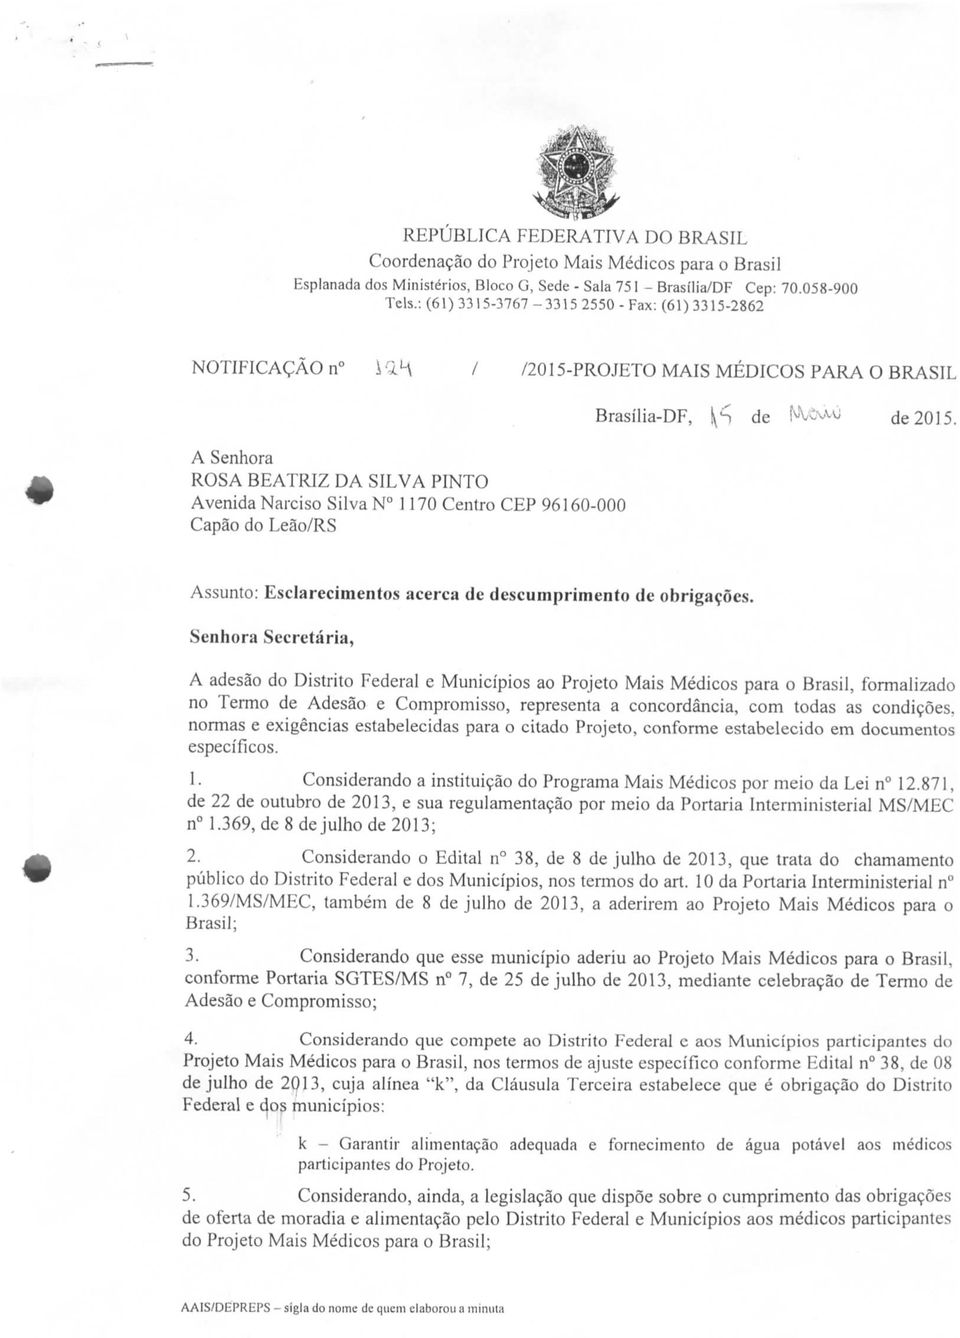 Capão do Leão/RS Brasília-DF, Sp de NV^-0 de 2015. Assunto: Esclarecimentos acerca de descumprimento de obrigações.